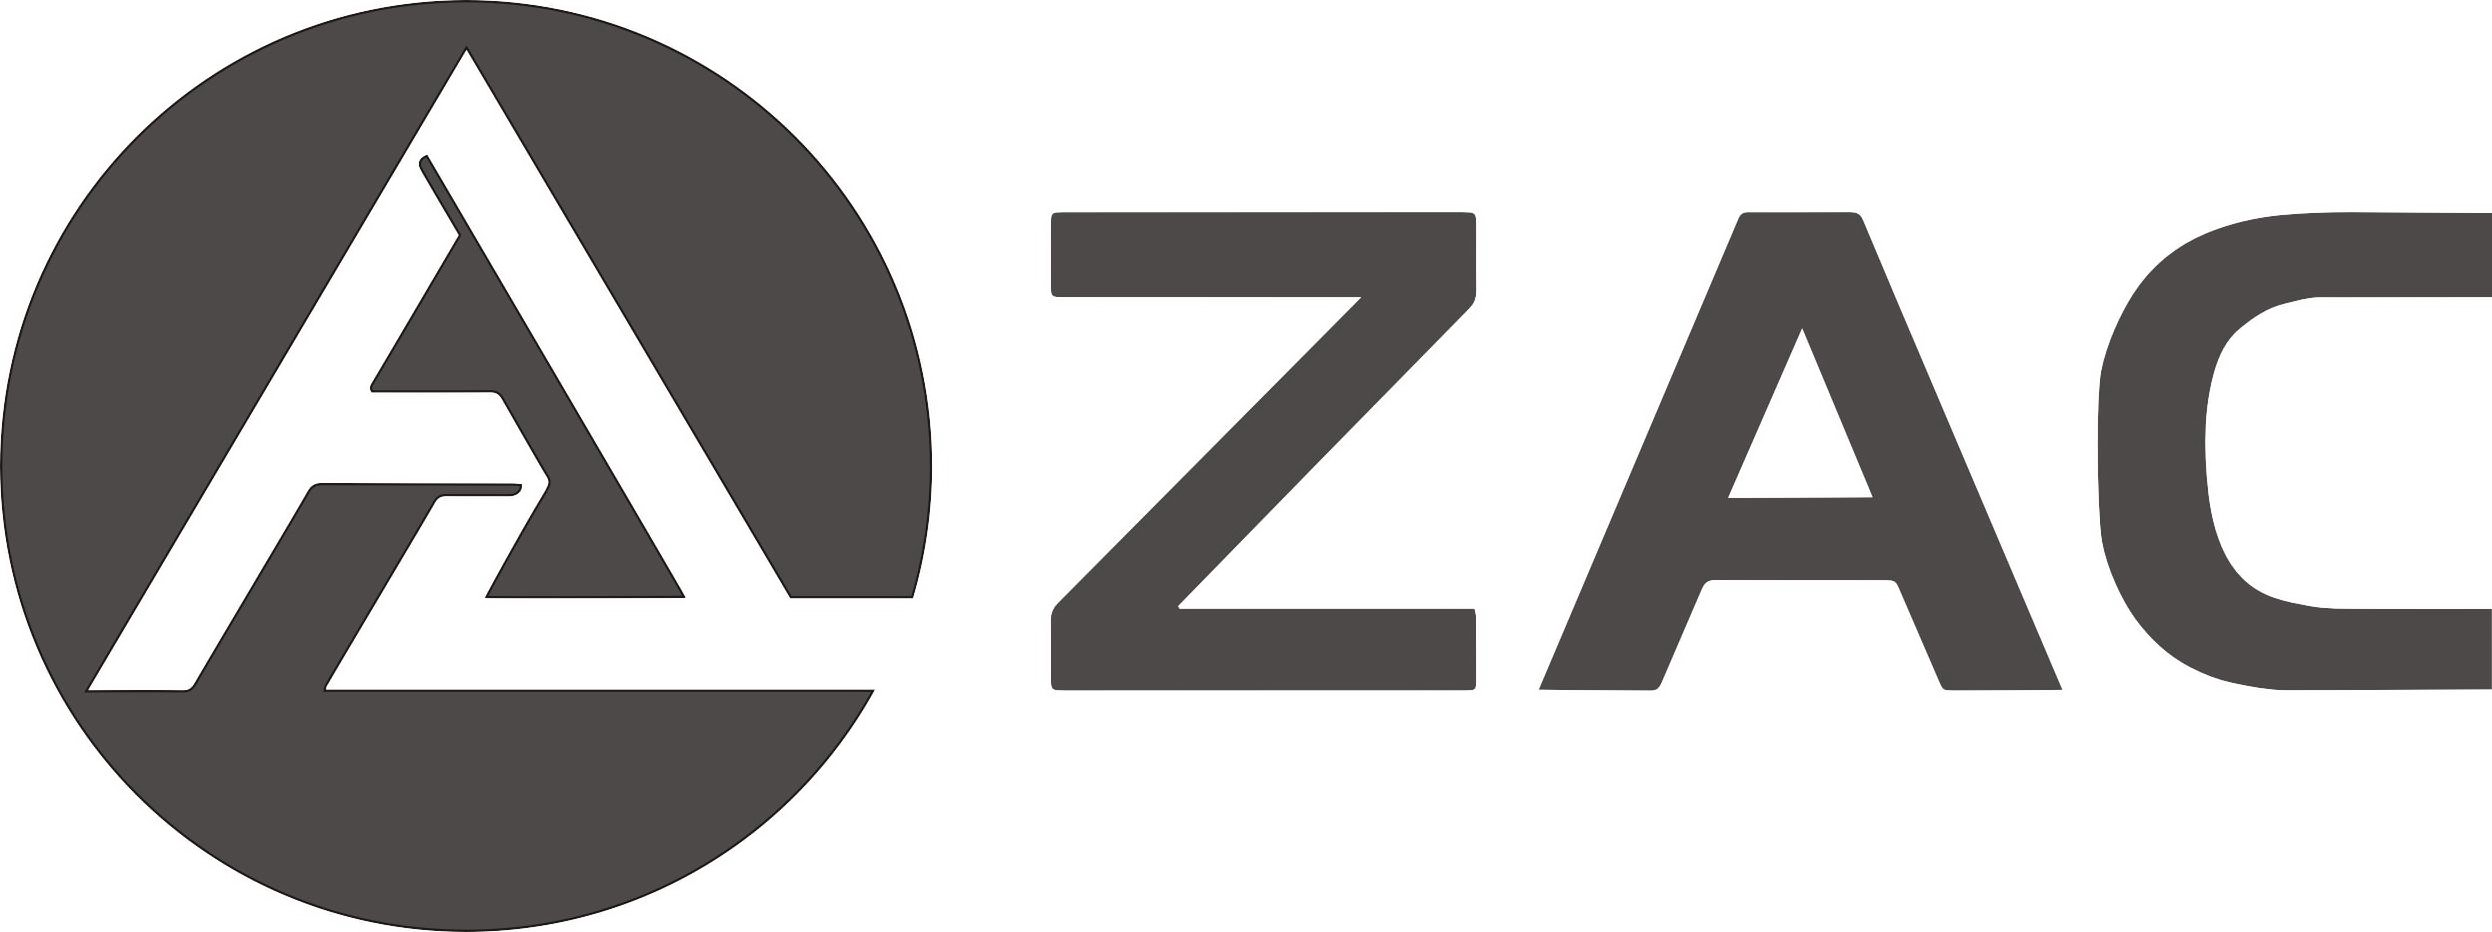 ZAC - Luoyang Zac Industrial Technology Co.,ltd Trademark Registration